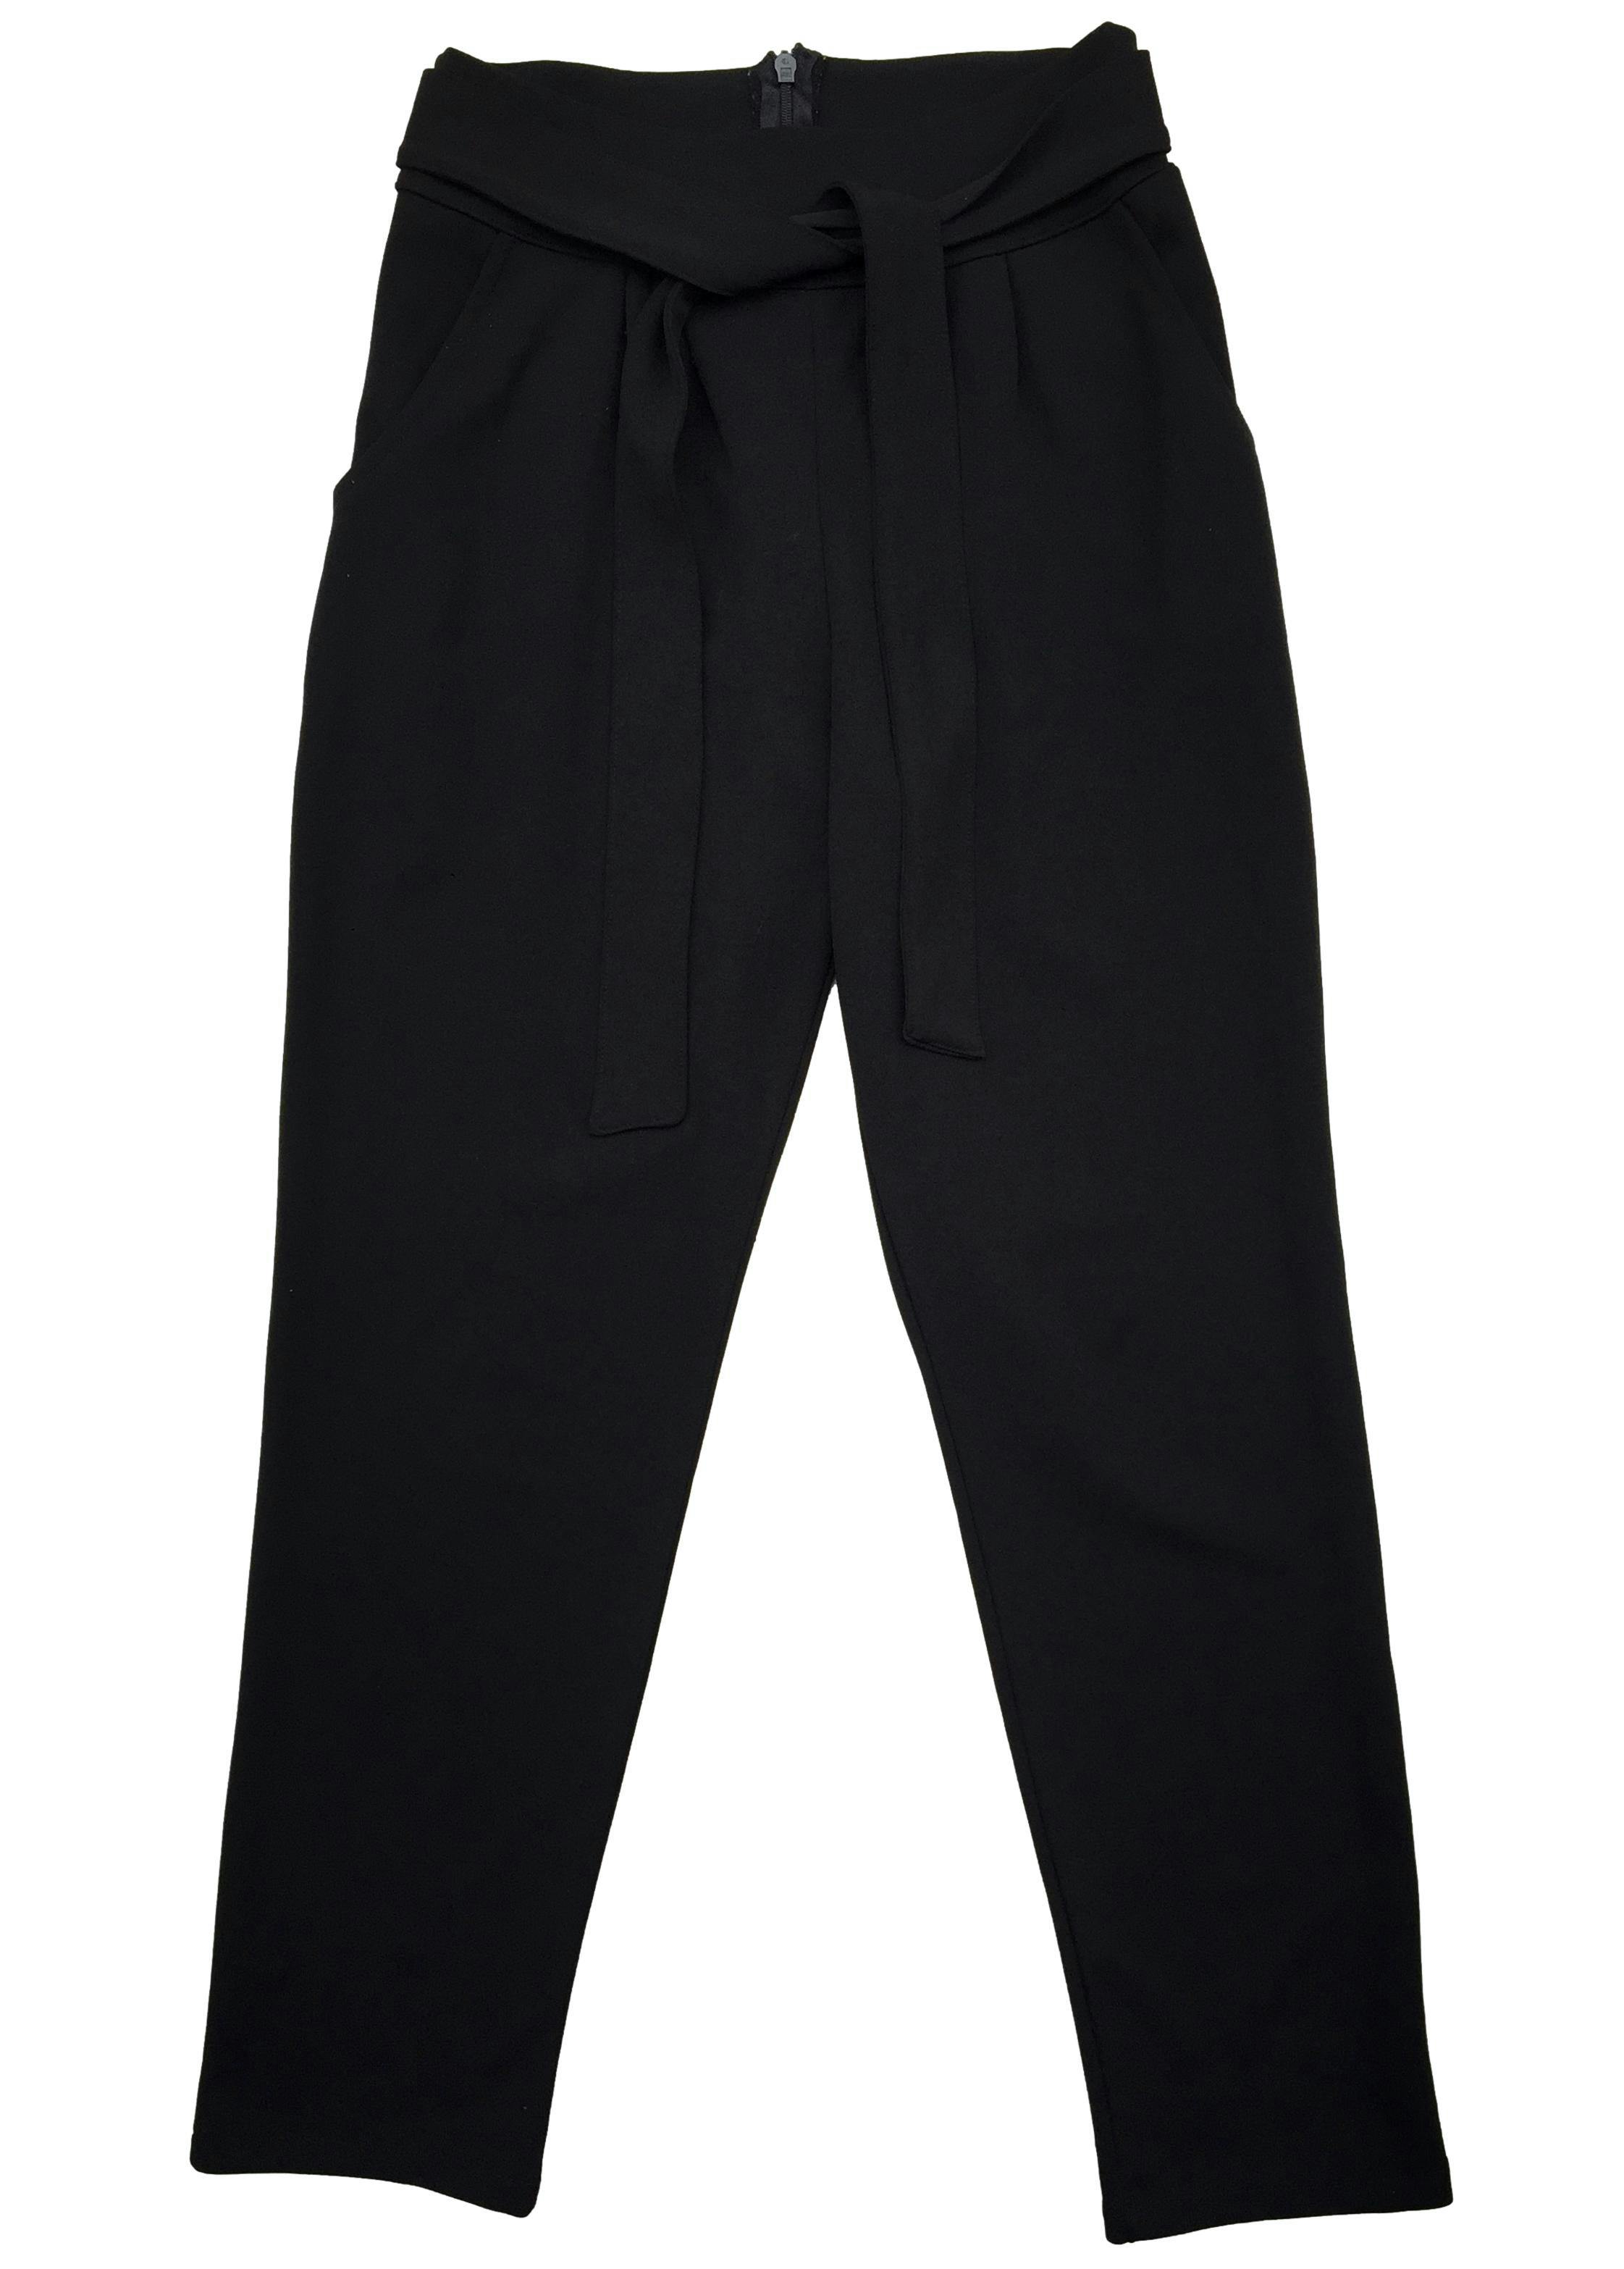 pantalon - Pantalón negro One love 100% algodón con cintos para amarrar.Cintura 66cm, Tiro 32 cm, Largo 96 cm.  - Talla S  - One love